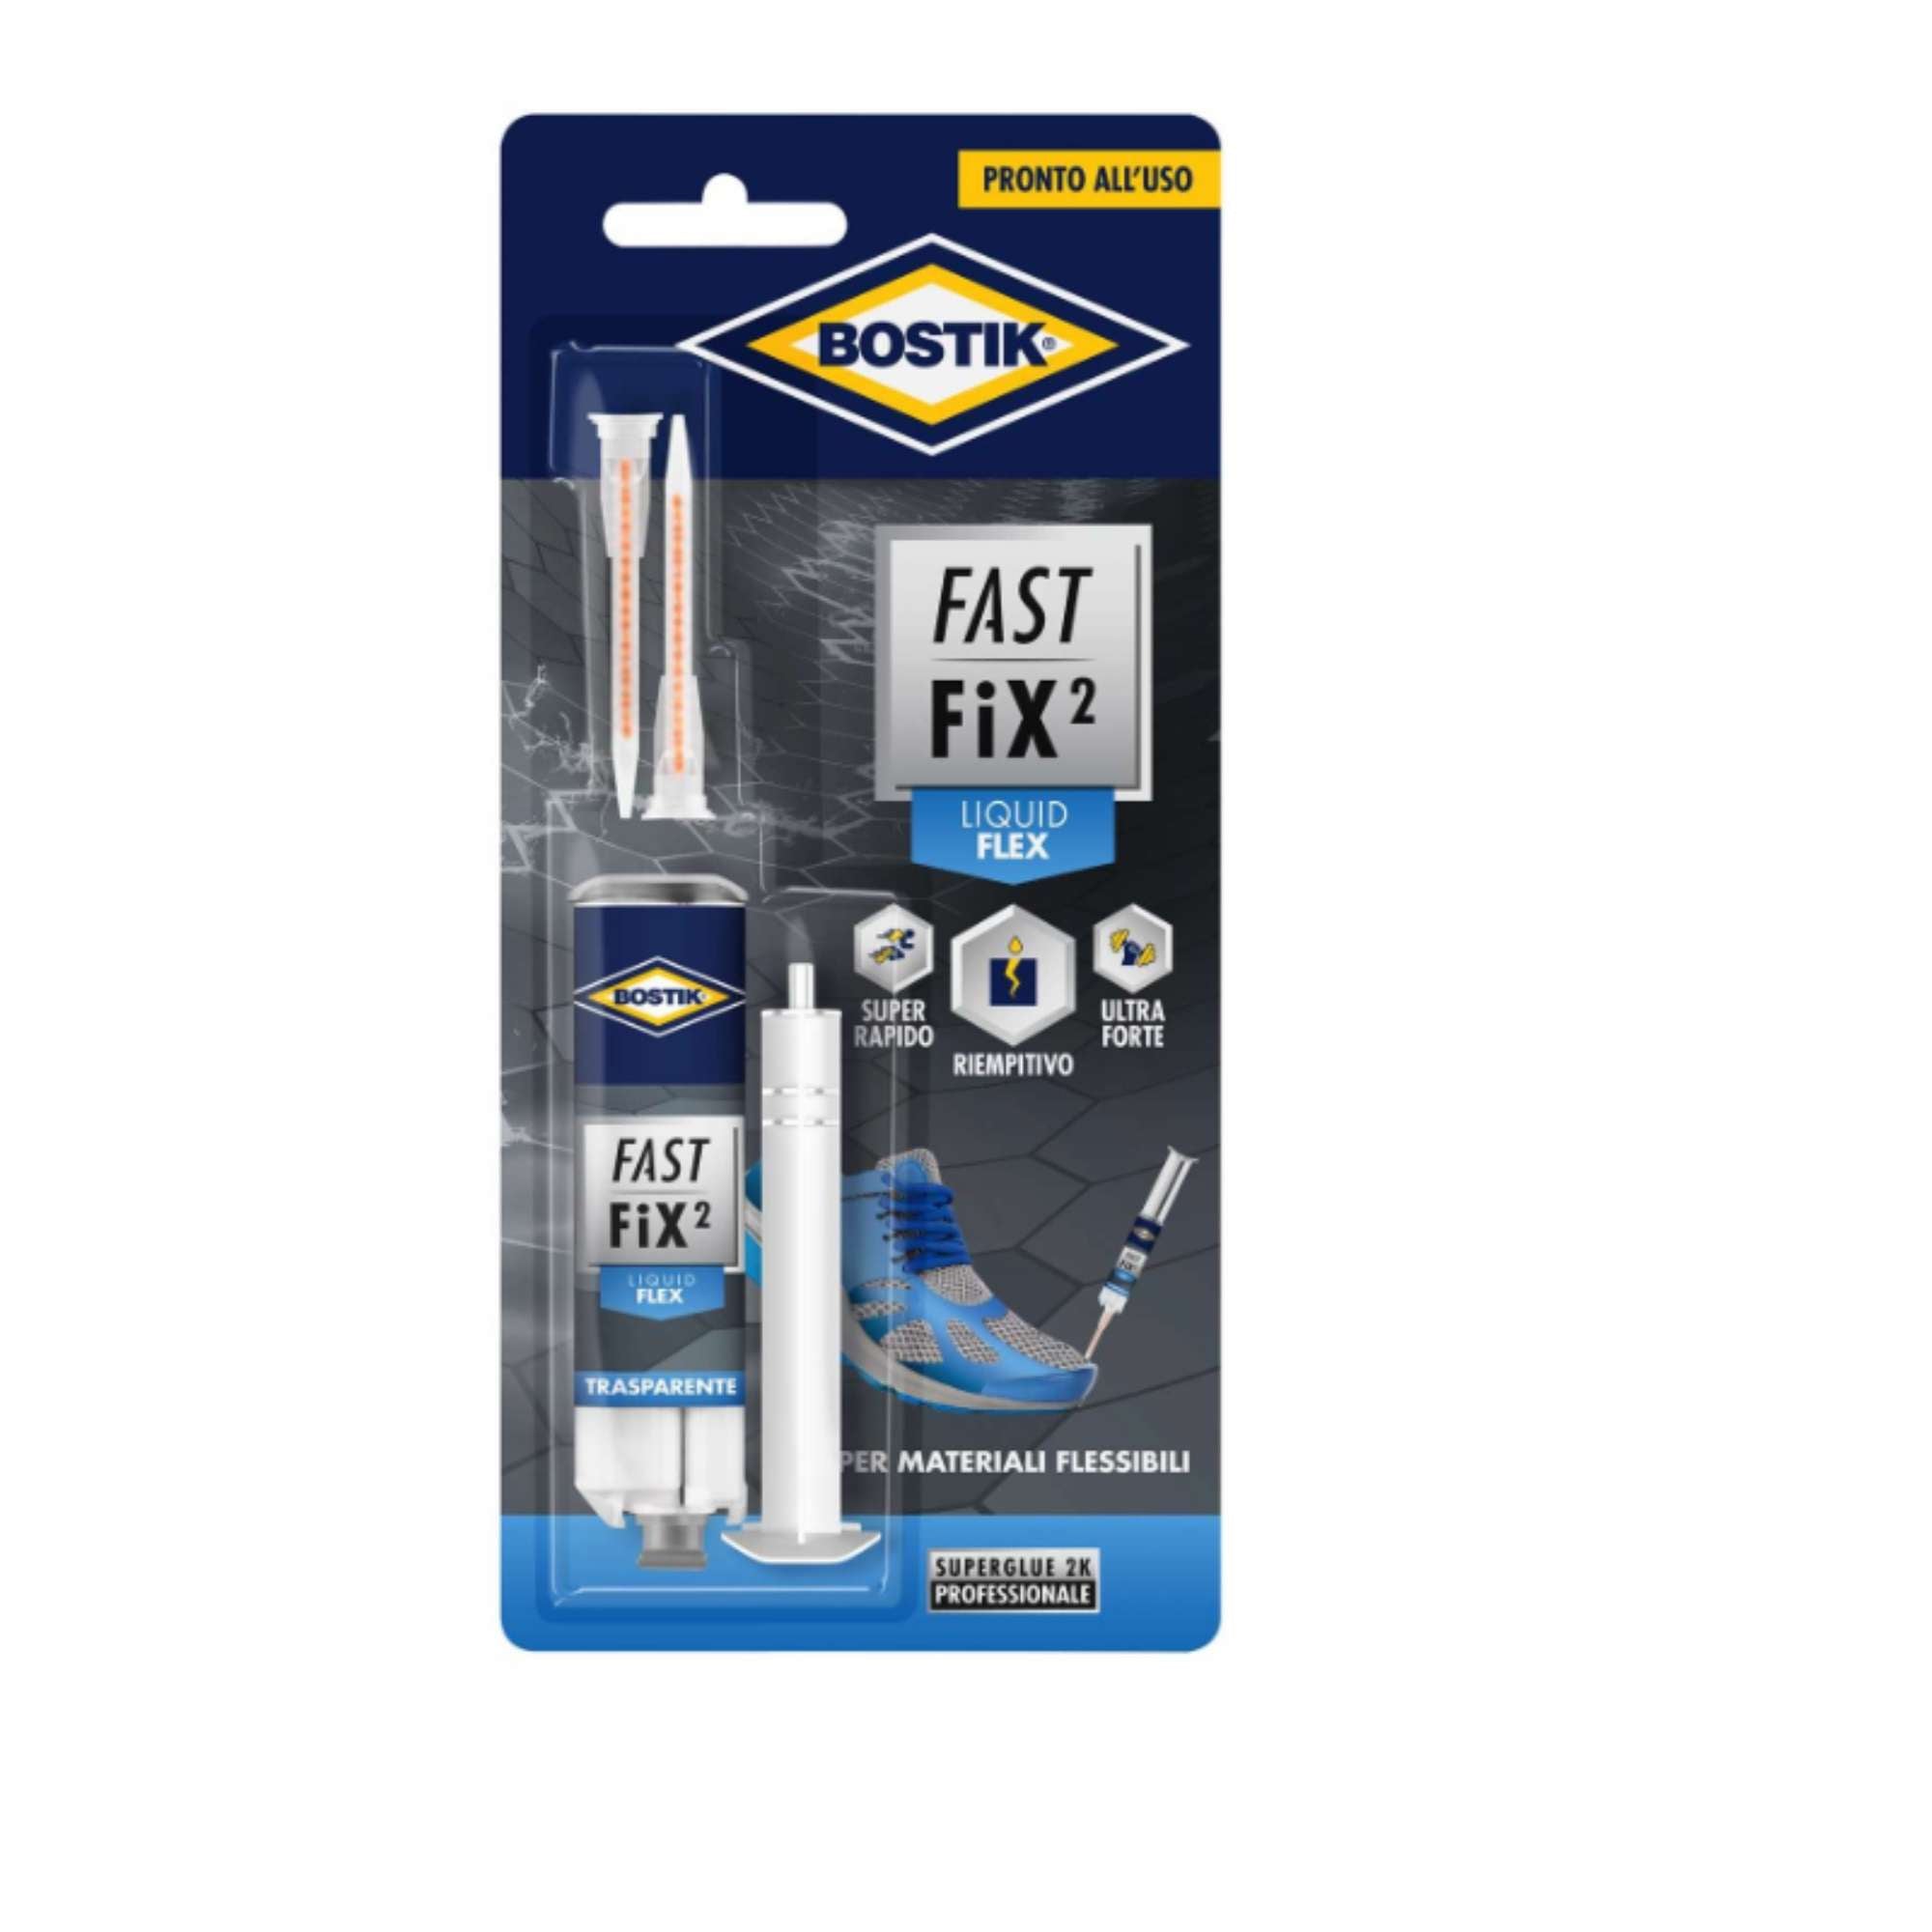 Bostik Fast Fix2 Flex - UHU Bostik 7000662